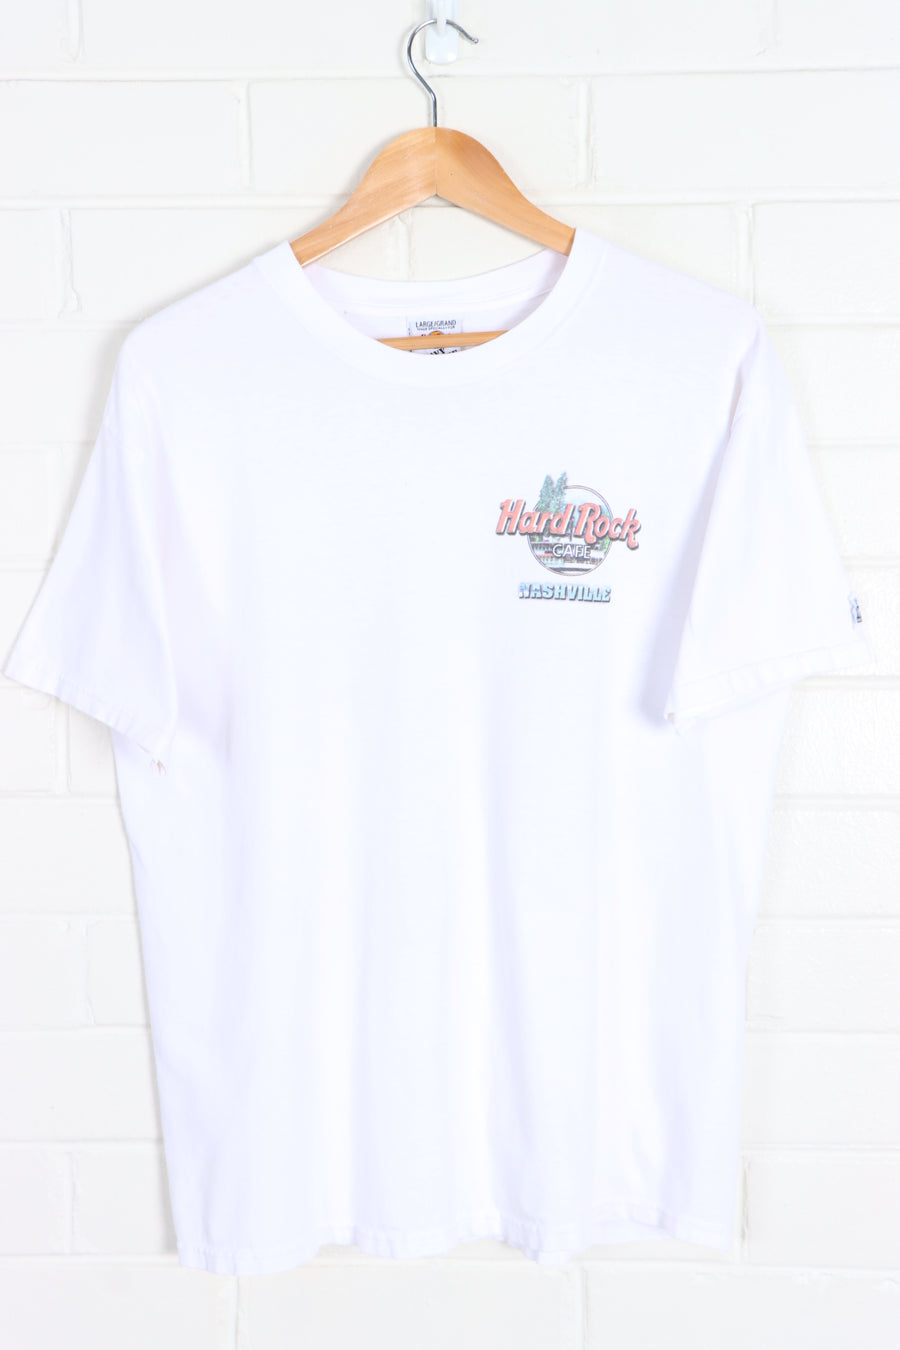 HARD ROCK CAFE Nashville Boat Tour Front Back T-Shirt (L) - Vintage Sole Melbourne